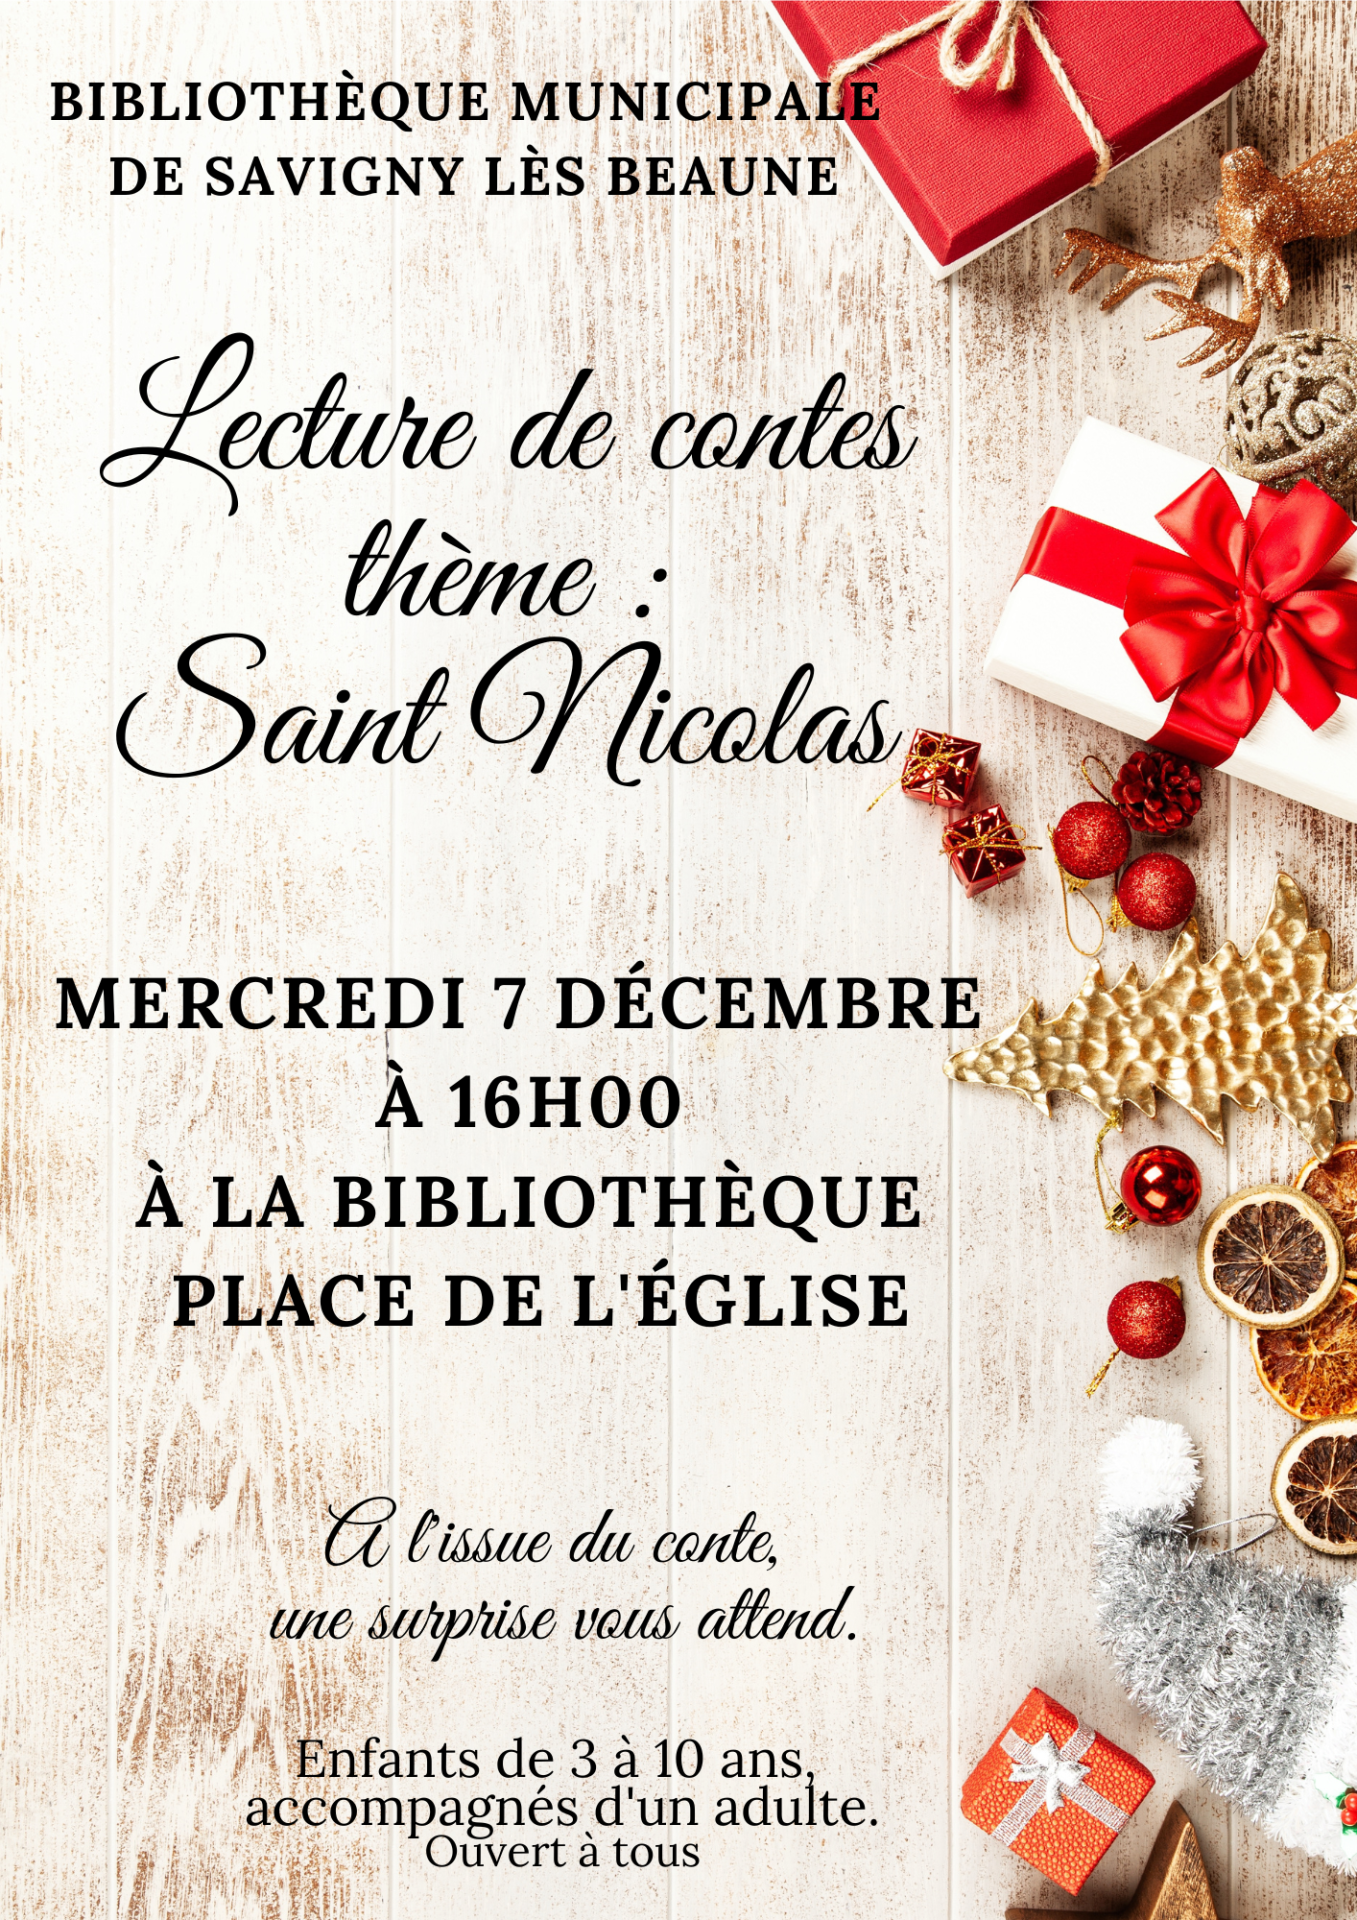 Lecture de contes à la bibliothèque de Savigny lès Beaune le 7 décembre à 16h